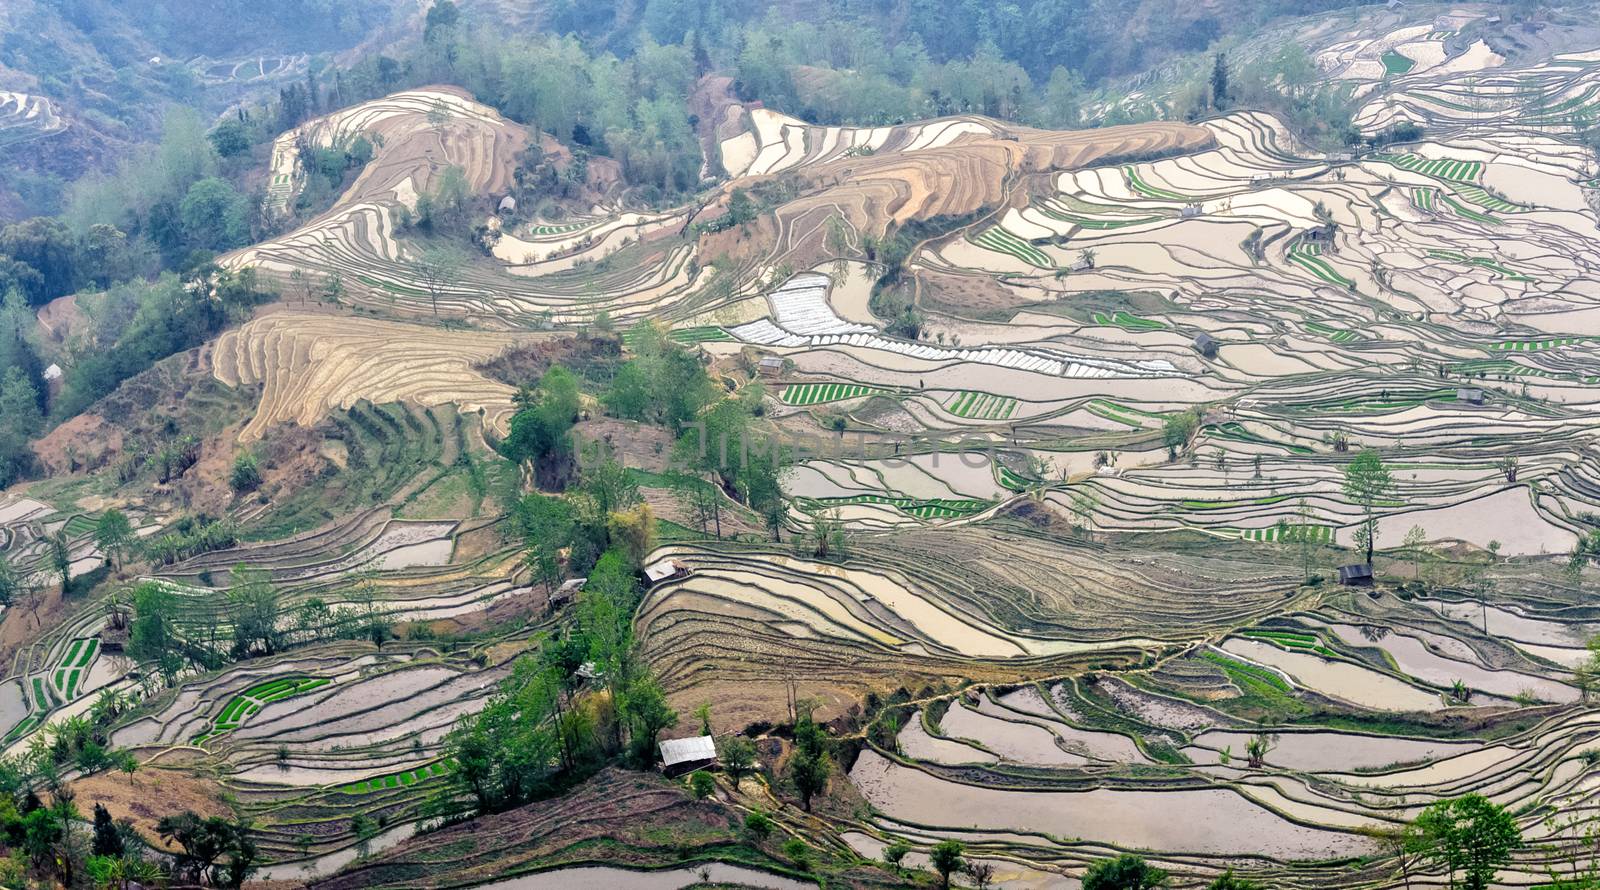 Yuan Yang Rice Terraces by JasonYU